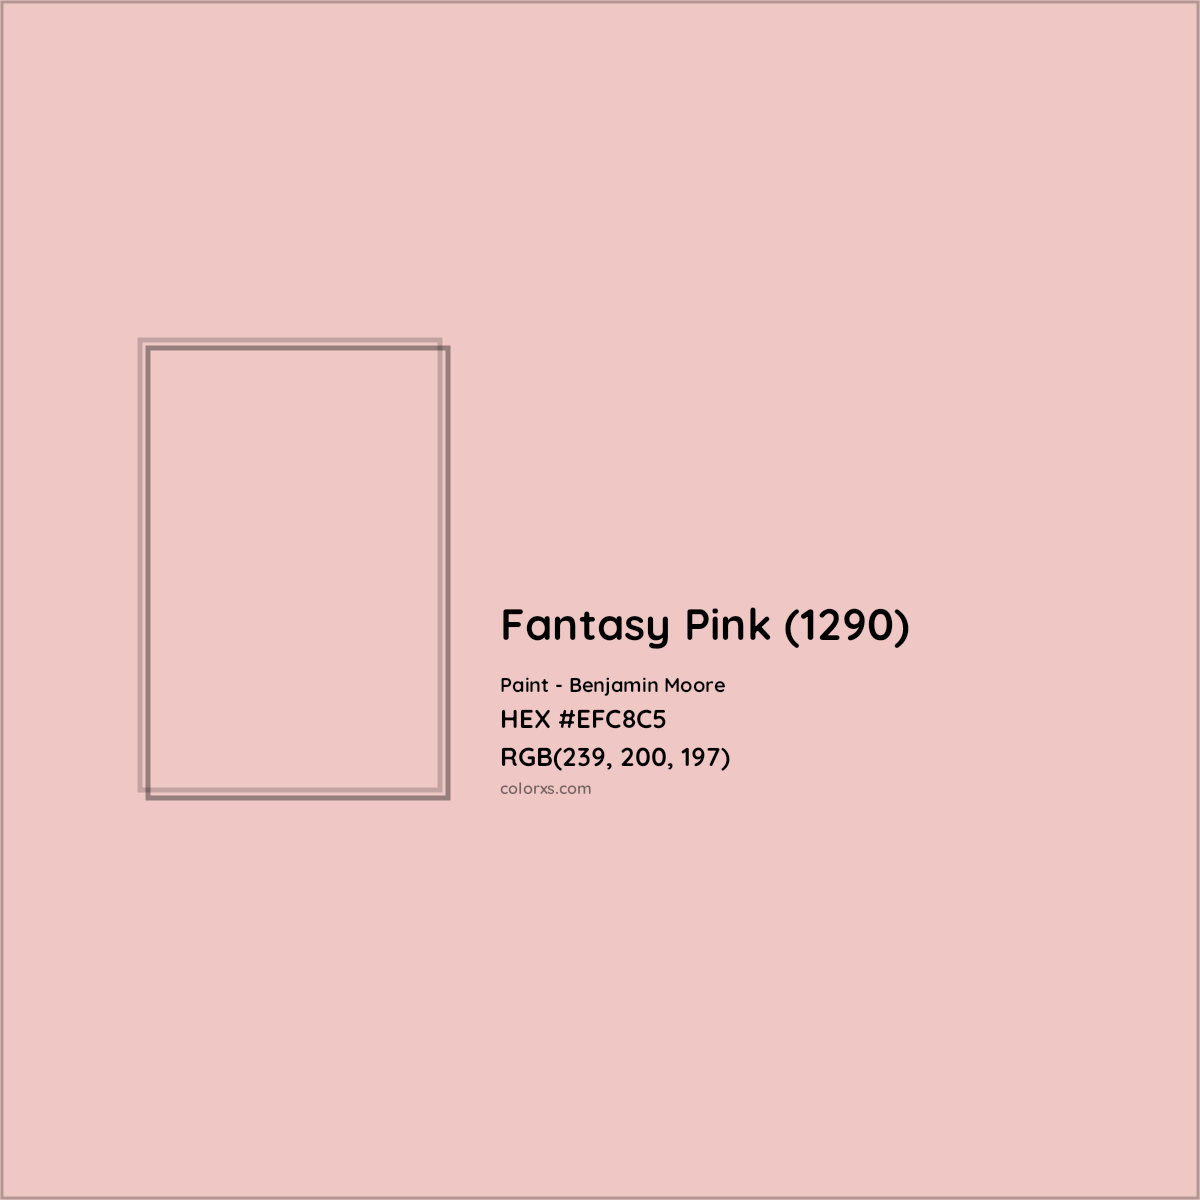 HEX #EFC8C5 Fantasy Pink (1290) Paint Benjamin Moore - Color Code